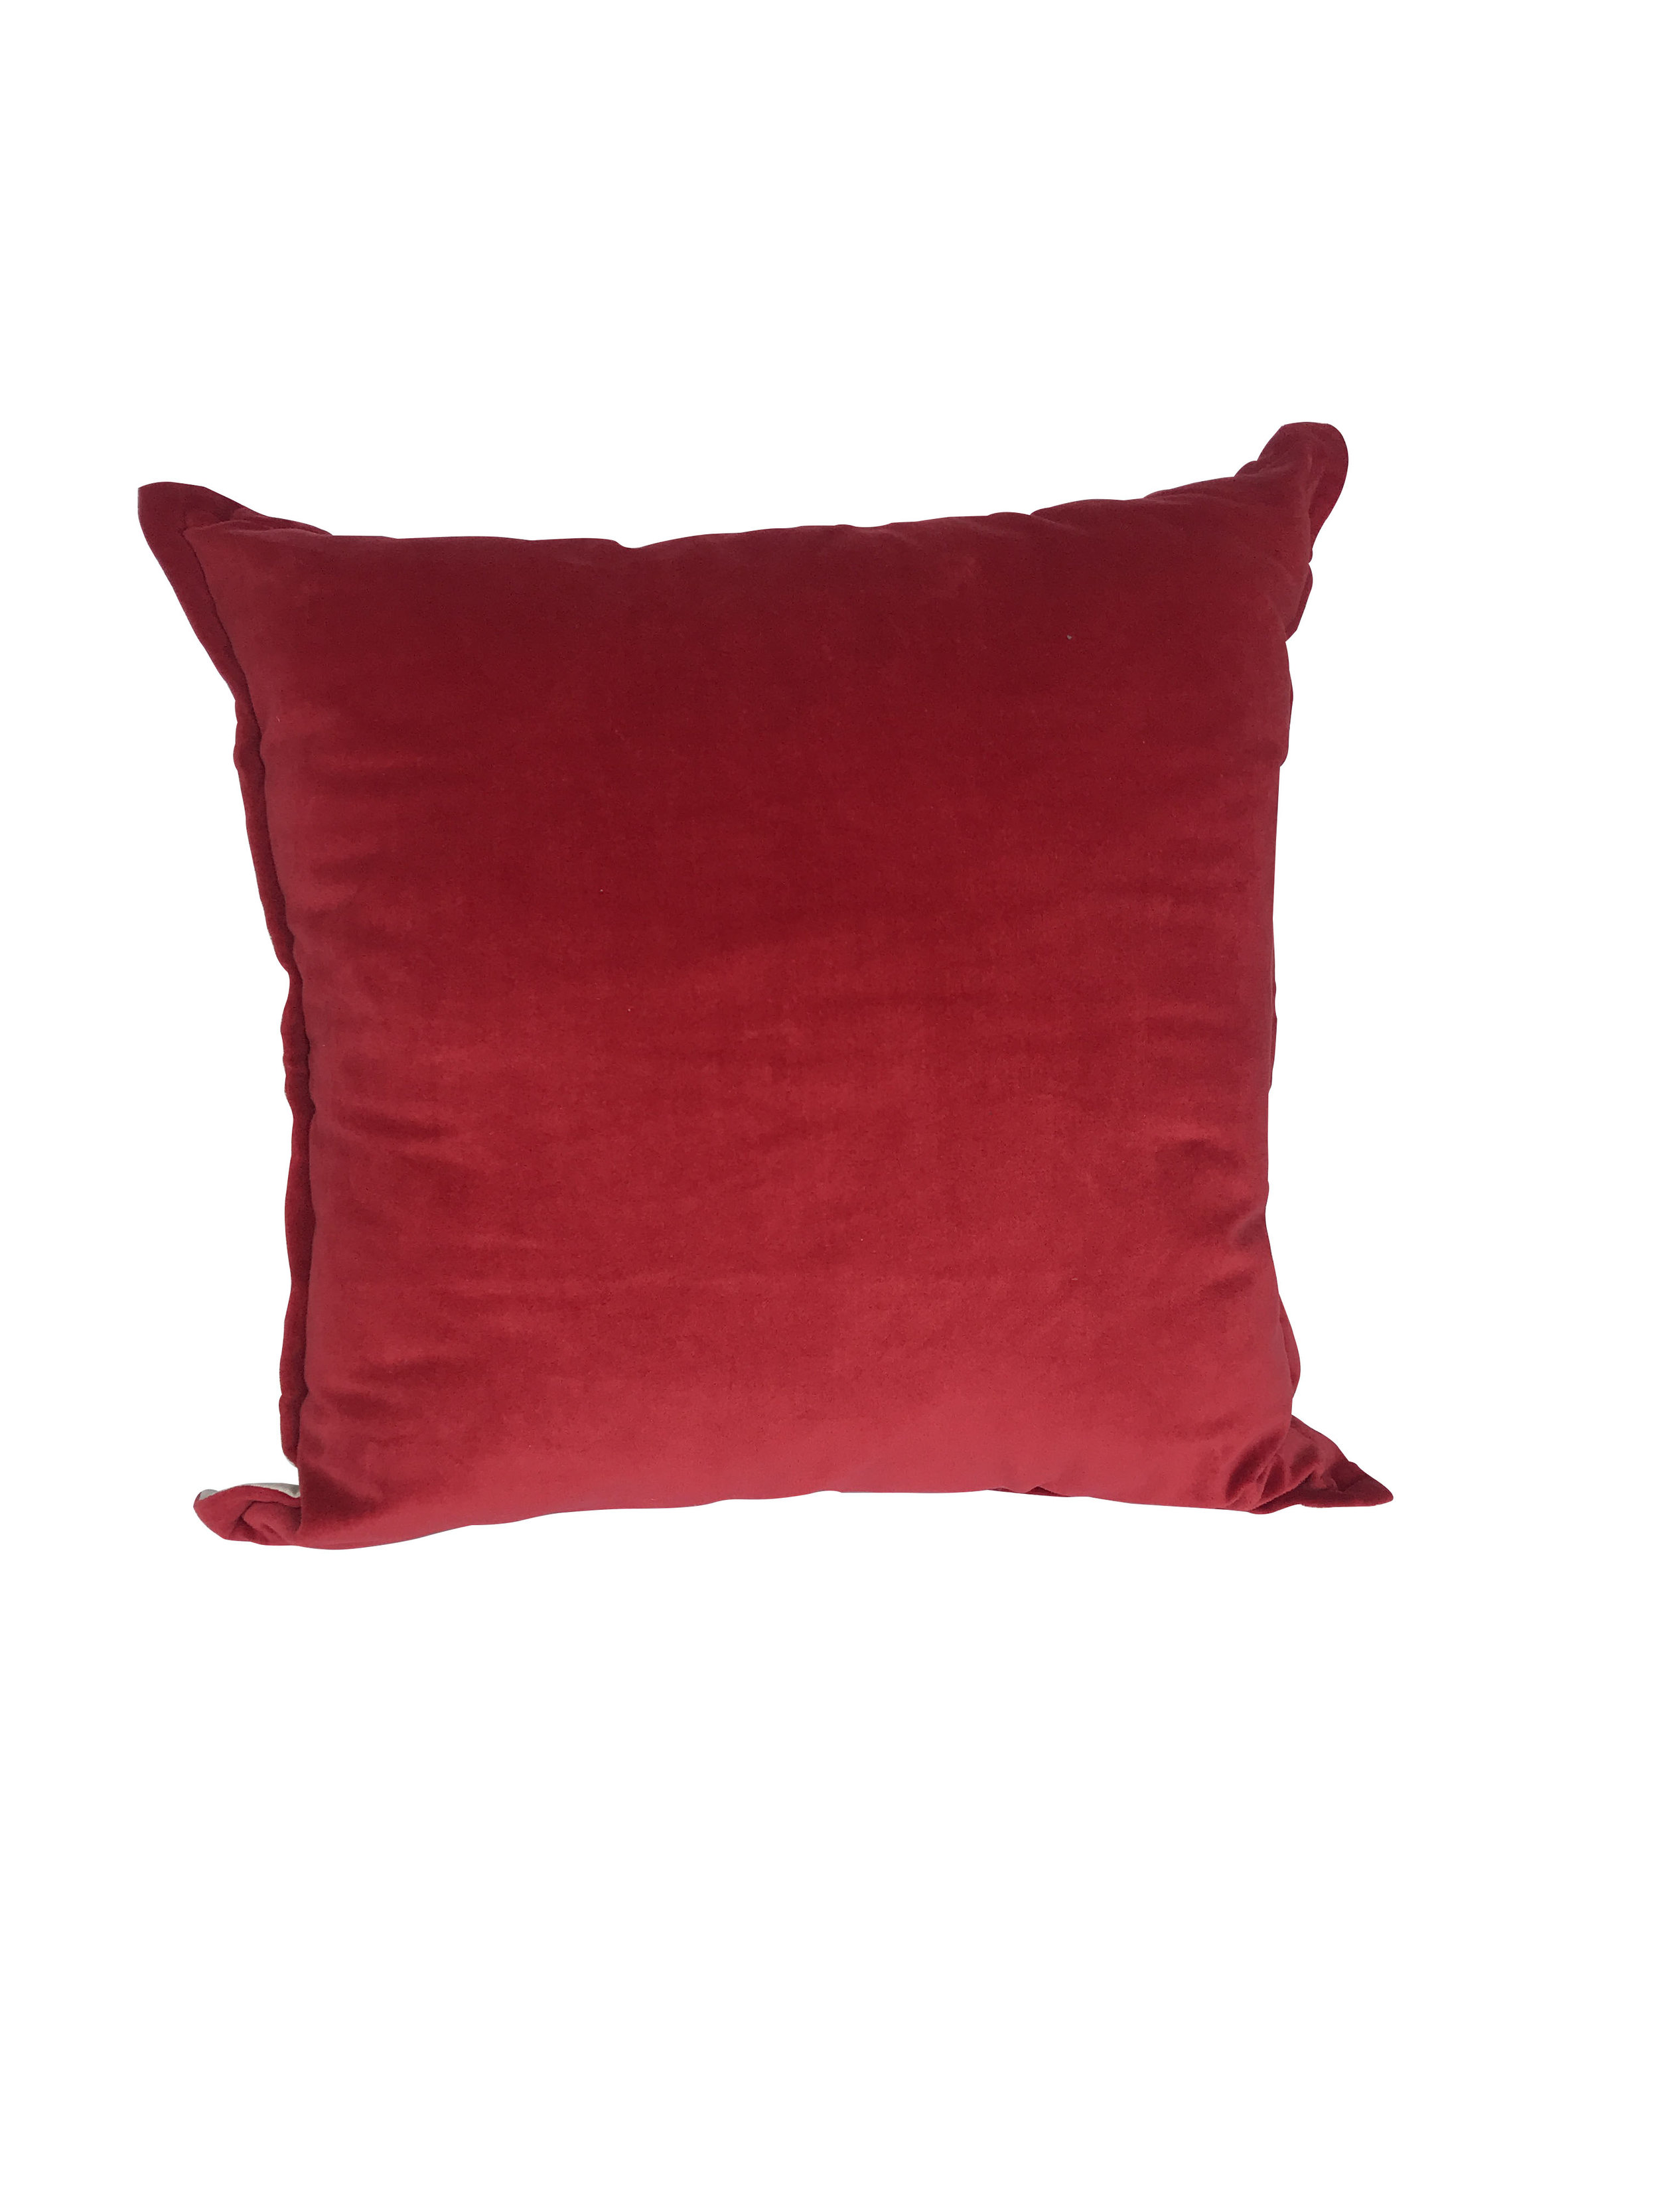 red velvet pillow.JPG